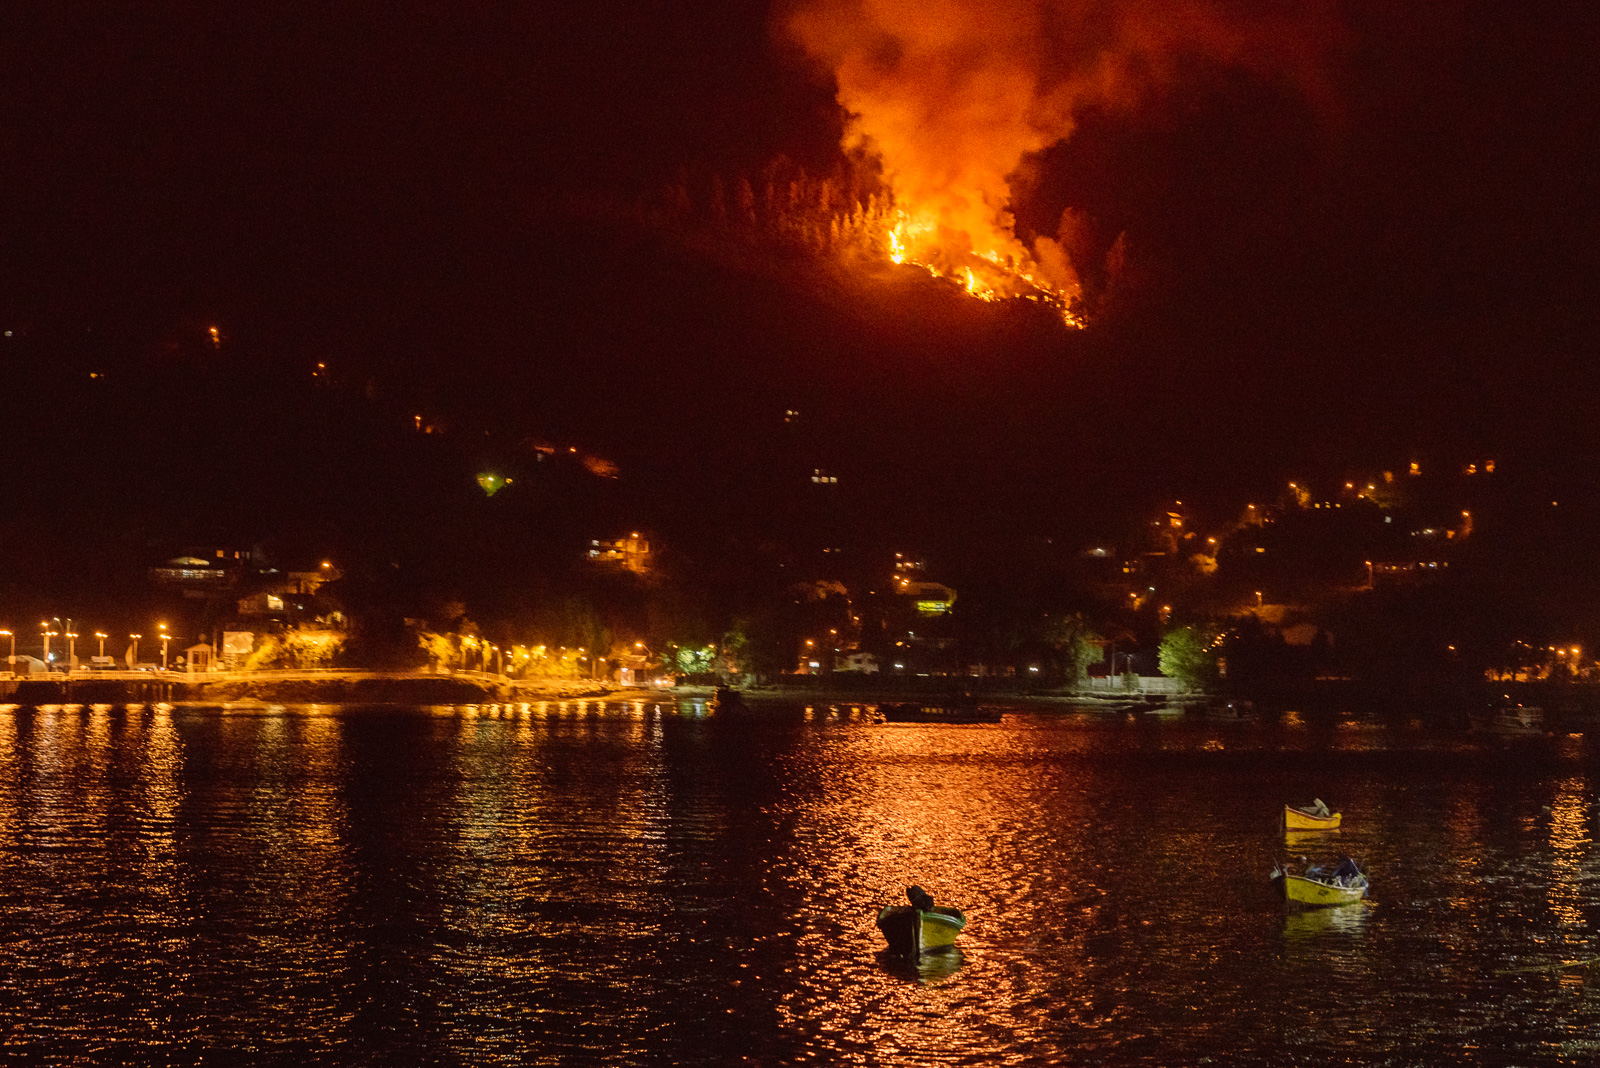 Anoche el incendio comenzó justo cuando nos subíamos al ferry. Foto Dave Trumpore.